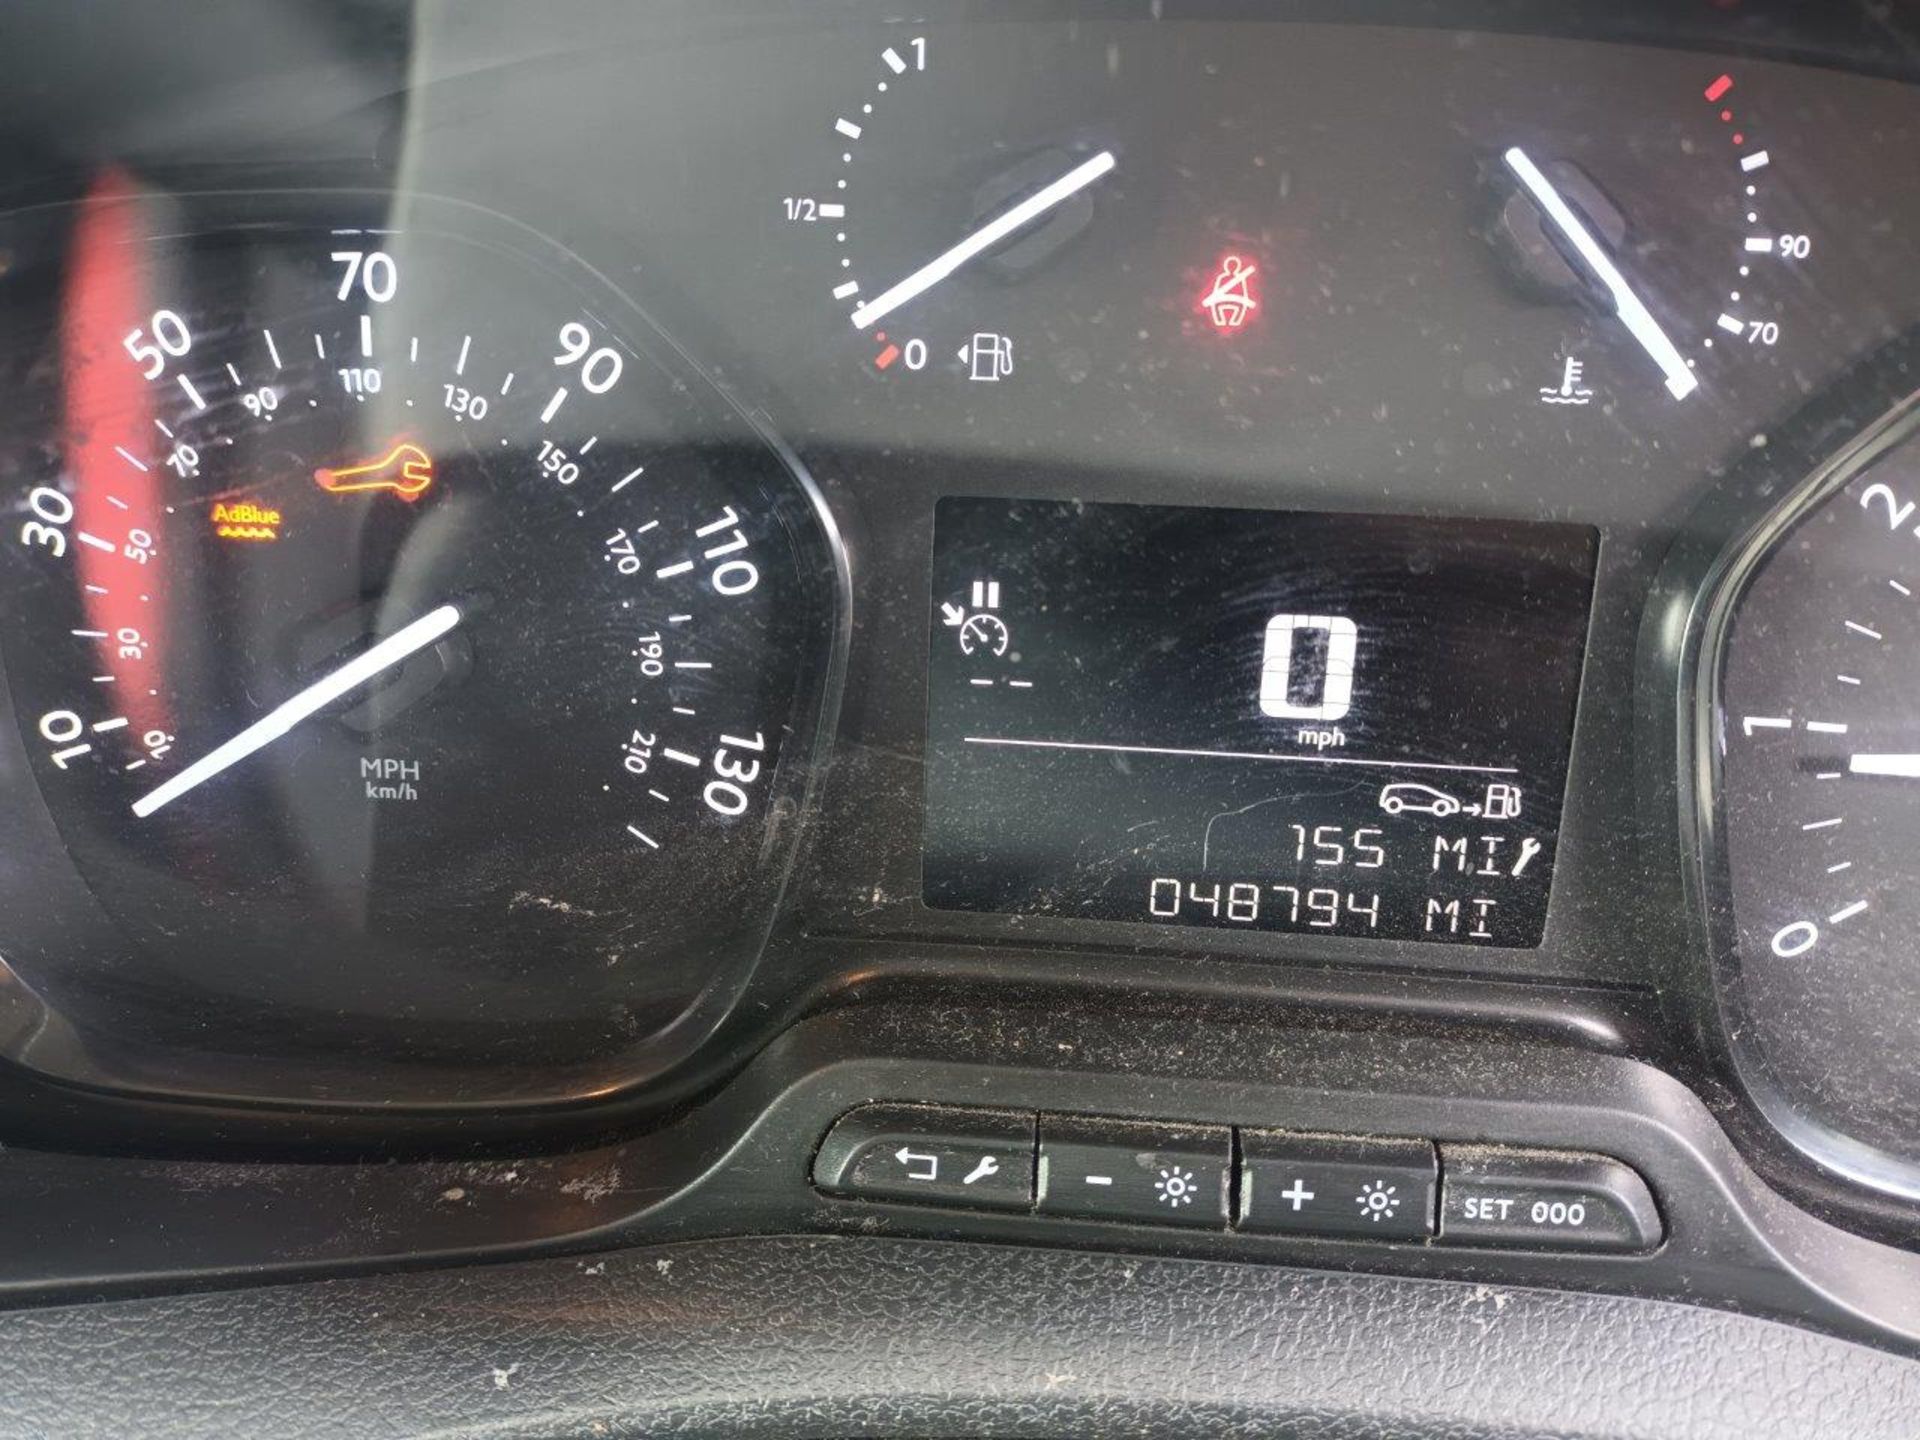 Vauxhall Vivaro L1 Diesel 2700 1.5d 120PS Sportive H1 Van (2019 - ) registration plate BP70 XHW, - Image 8 of 10